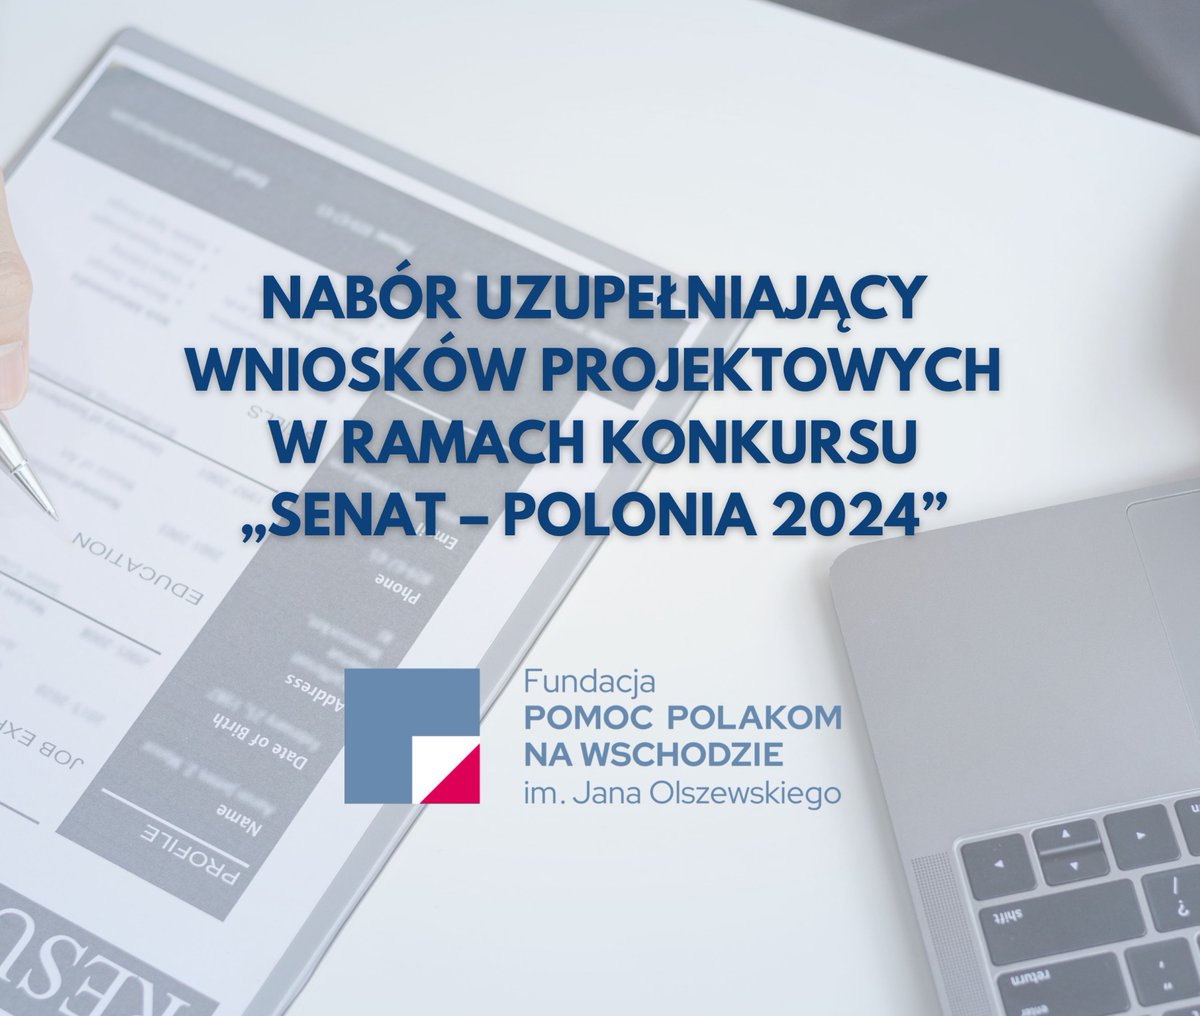 ▶️ Zachęcamy wszystkich zainteresowanych do złożenia wniosku o dofinansowanie działań związanych z Polonią i Polakami za granicą w ramach konkursu SENAT POLONIA - 2024 🇵🇱 szczegóły poniżej 👇 pol.org.pl/konkurs-senat-…